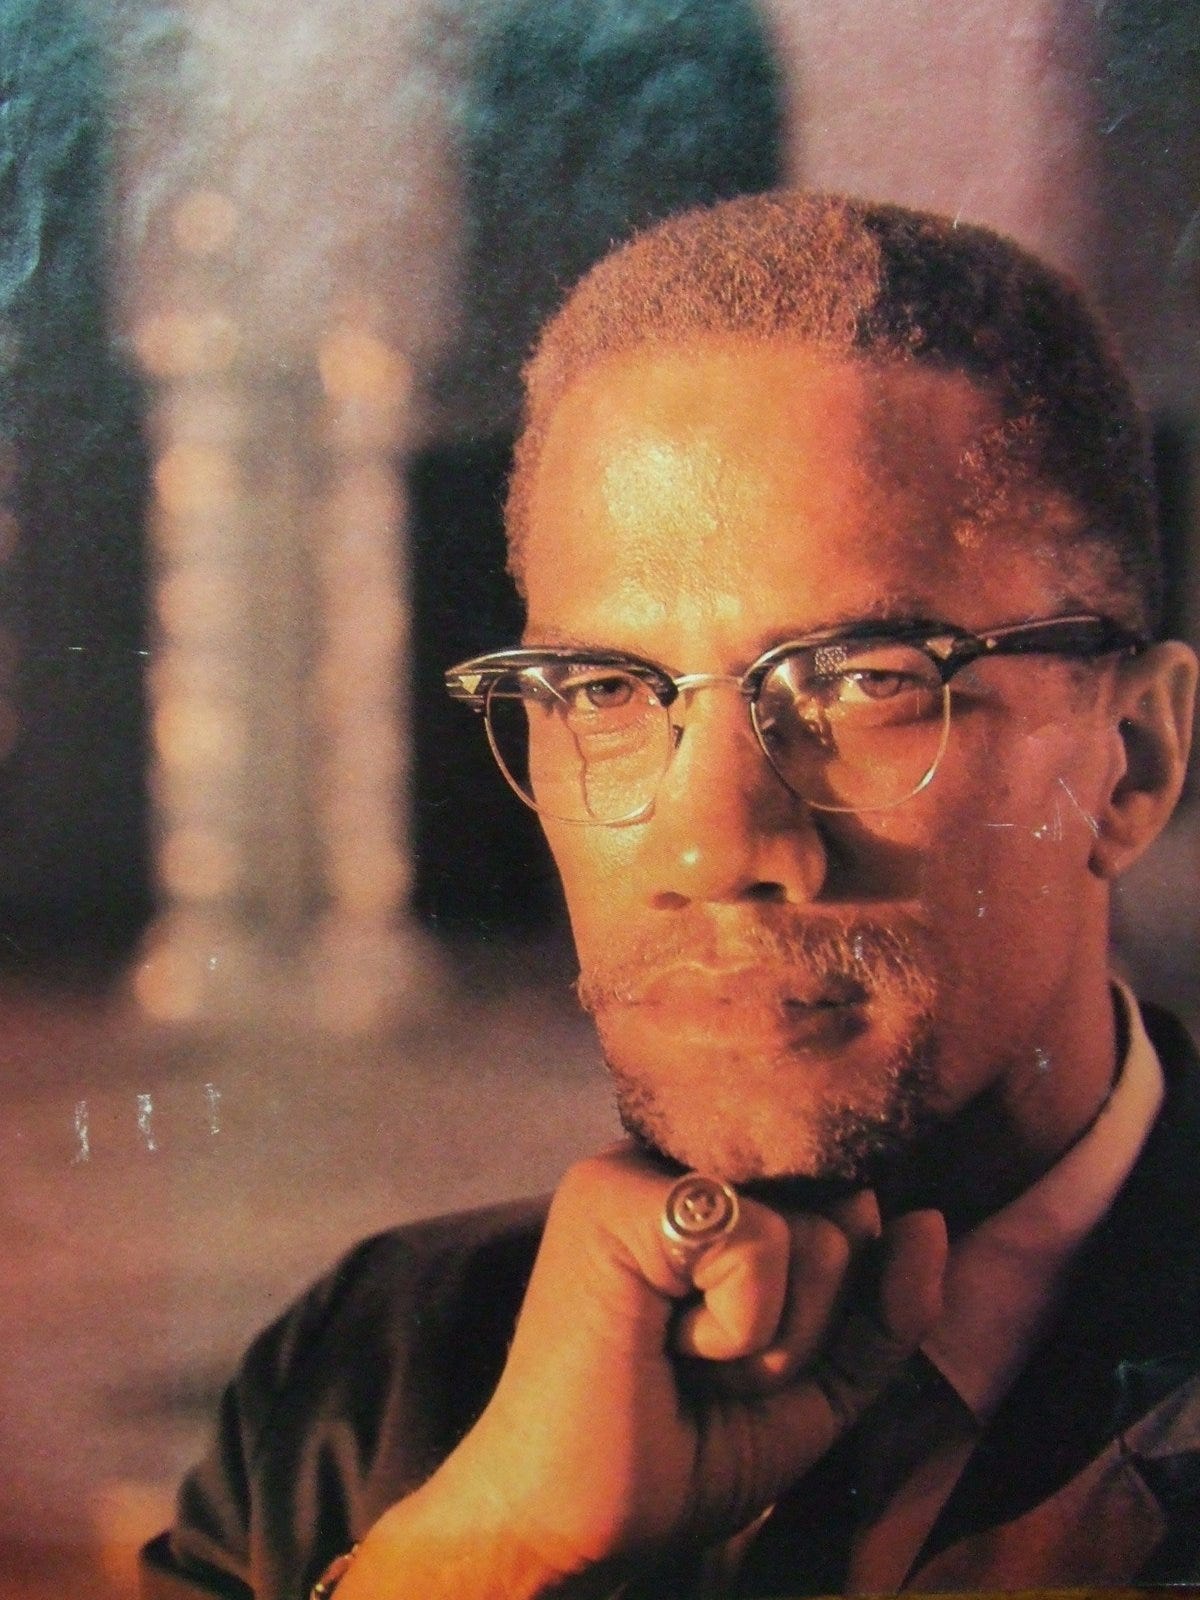 The heroic journey of Malcolm X - Brian Scott MacKenzie - Medium